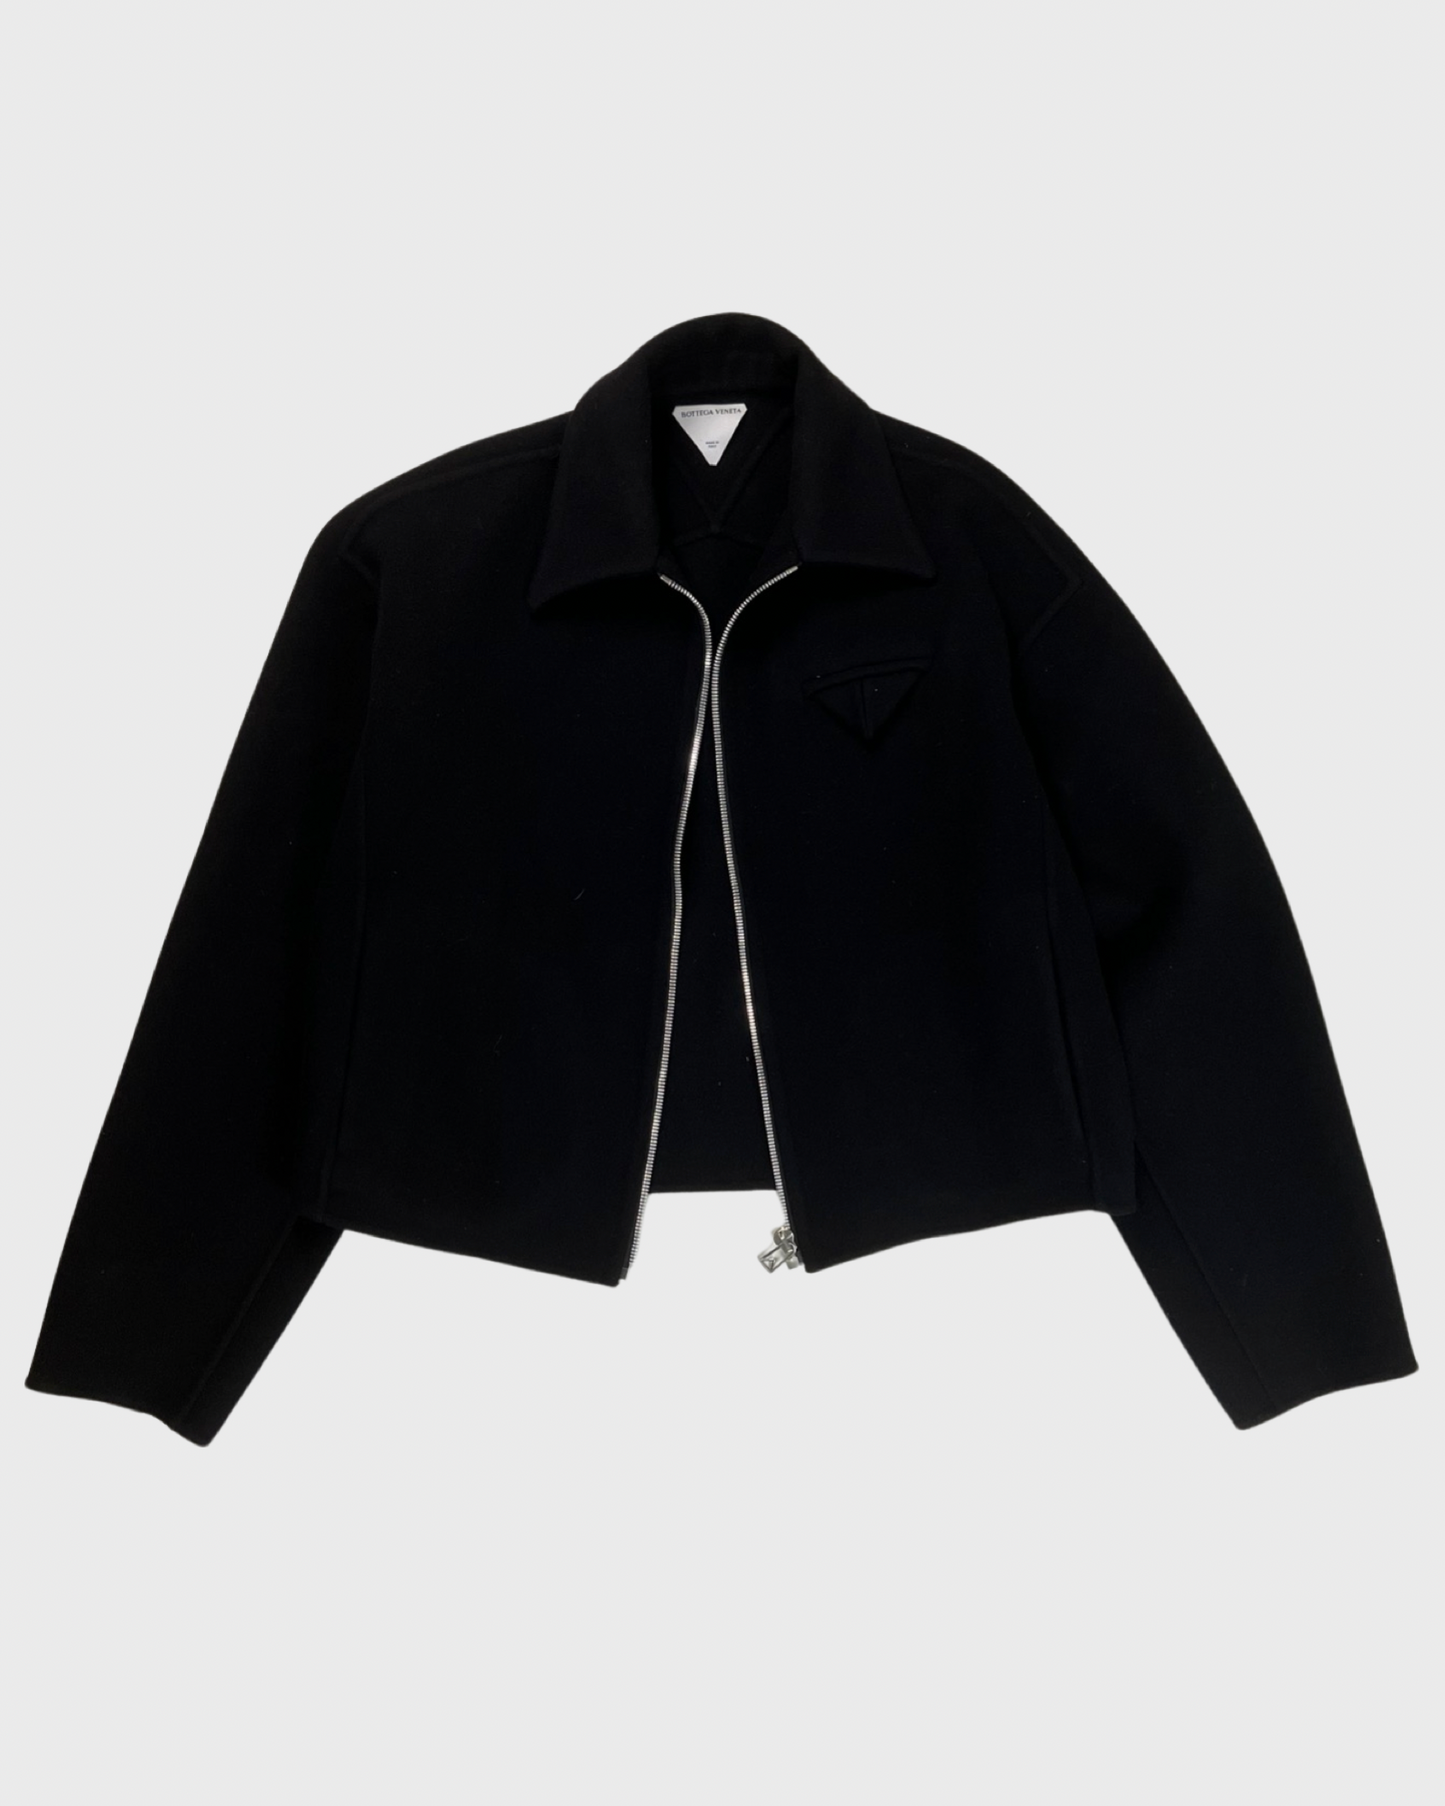 Bottega Veneta felted Cropped Jacket with elongated sleeves SZ:48